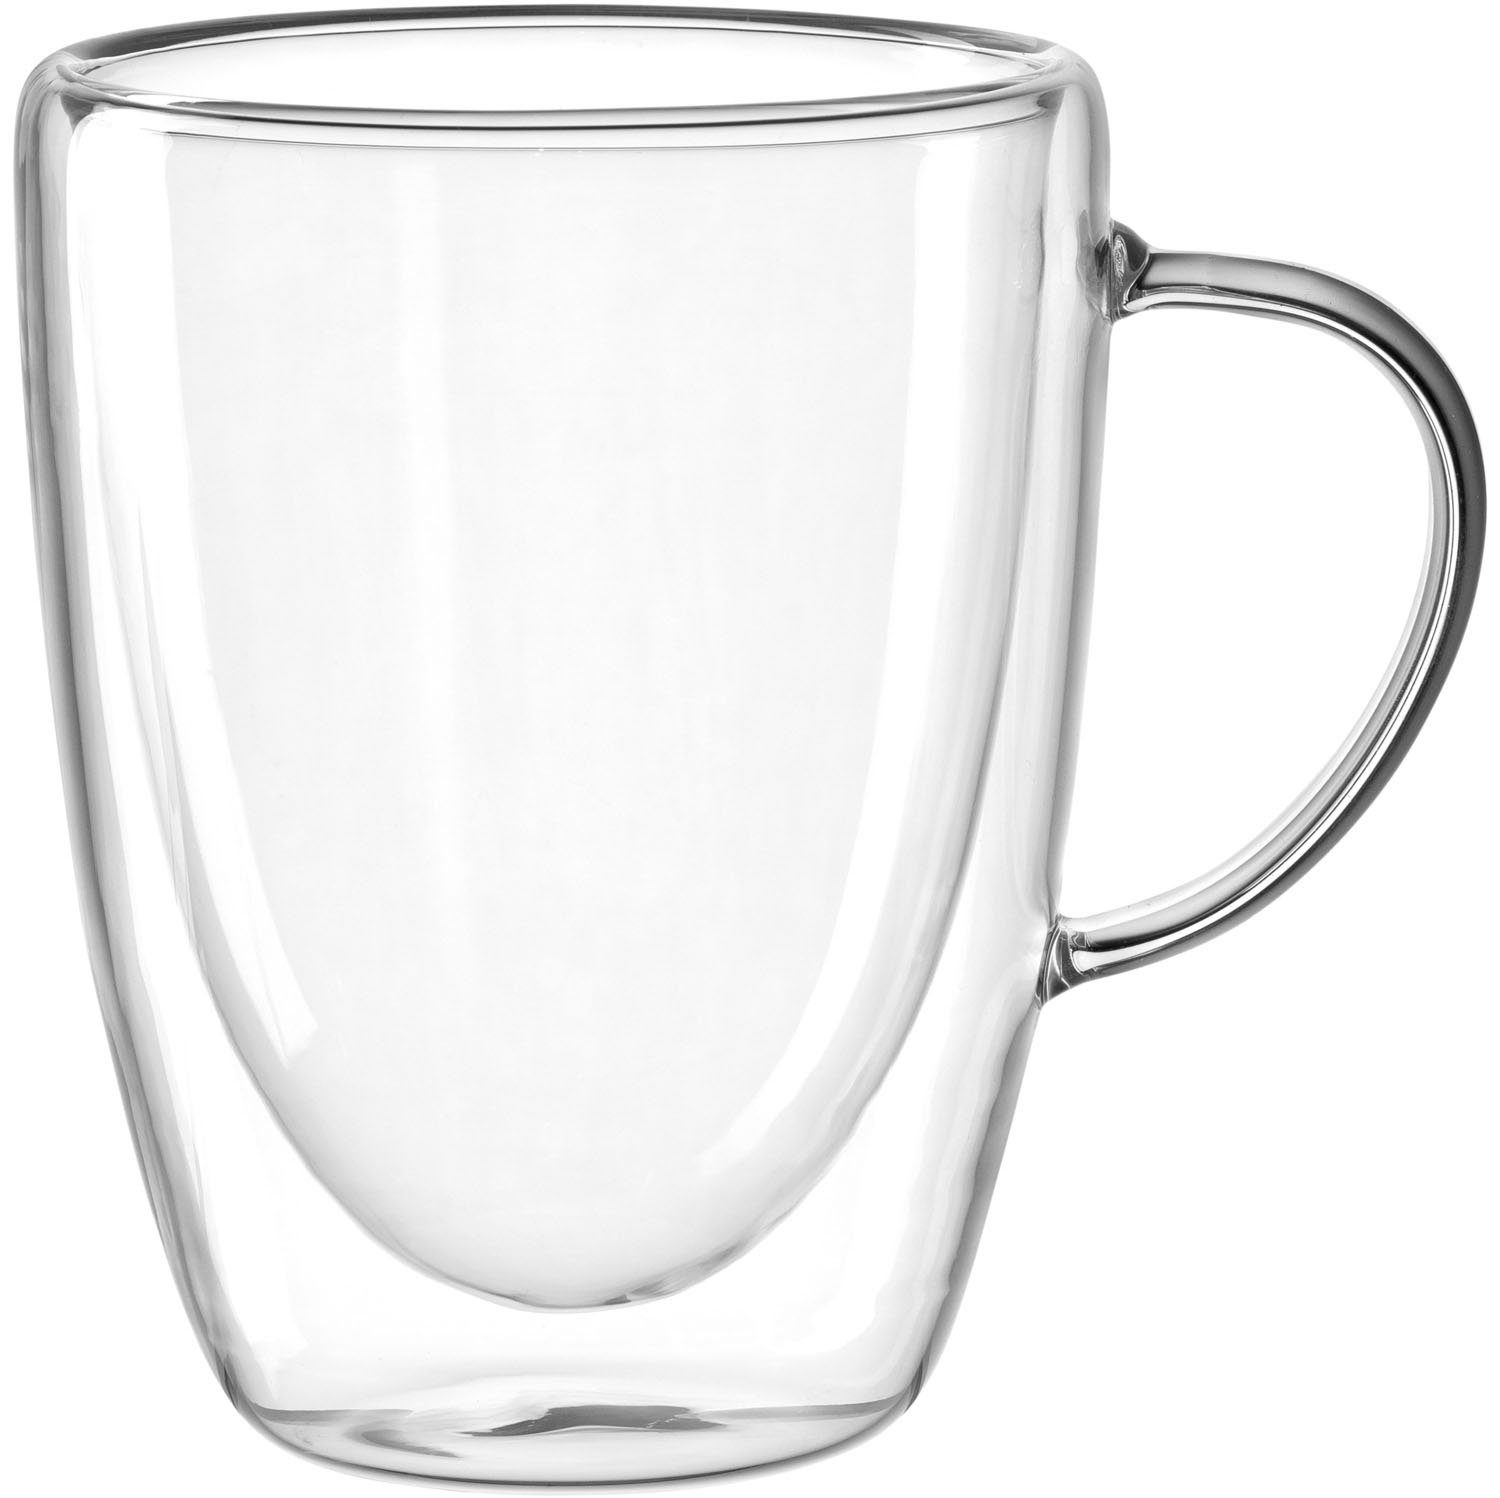 LEONARDO Gläser-Set DUO, Borosilikatglas, doppelwandig, 4-teilig